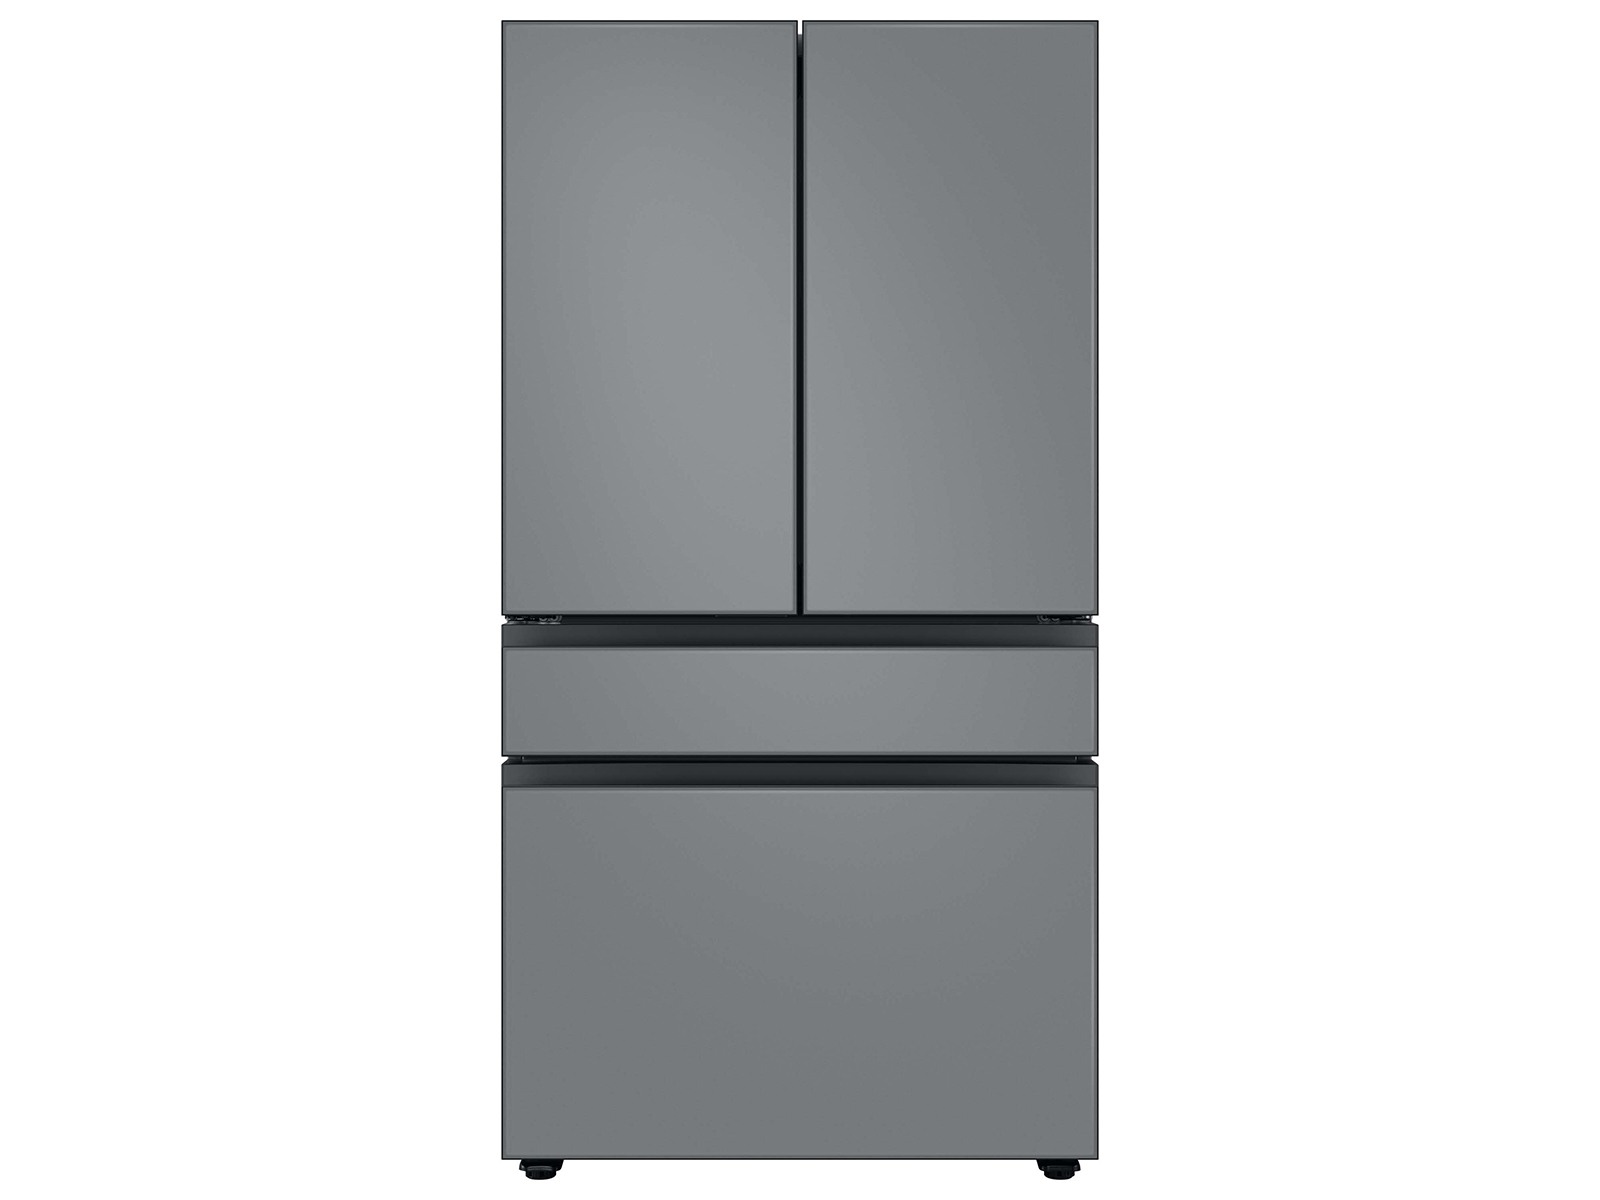 Bespoke 4-Door French Door Refrigerator (23 cu. ft.) with Customizable Door Panel Colors and Beverage Center™ in Matte Grey Glass